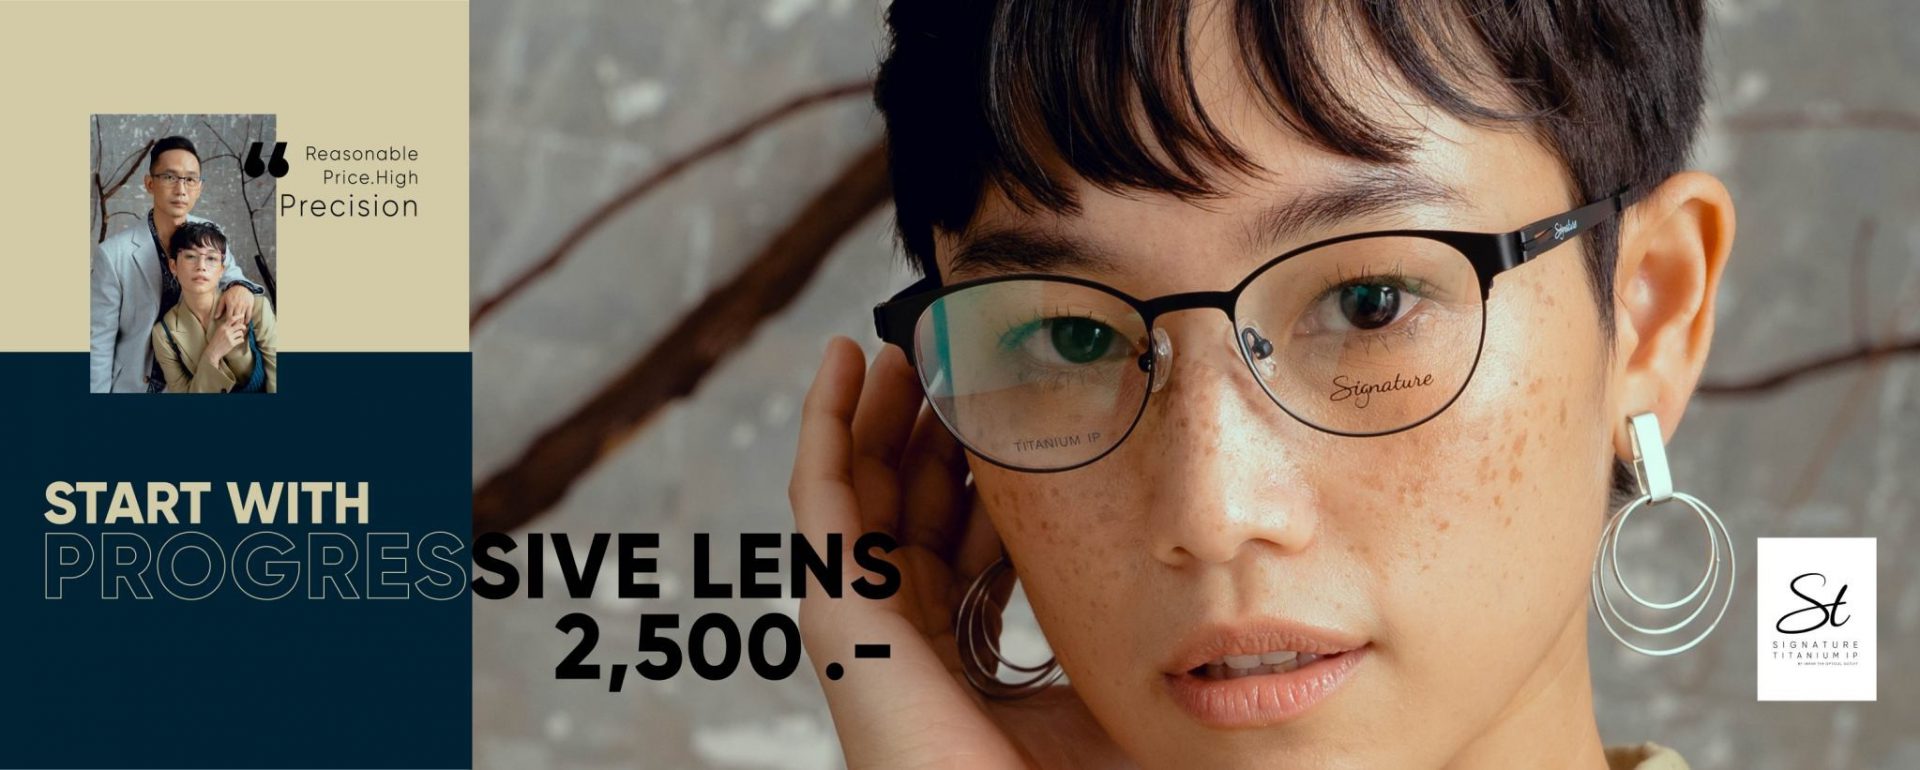 ร้านแว่นตา iWear โปรเกรสซีฟเลนส์ เริ่มต้น 2,500 บาท